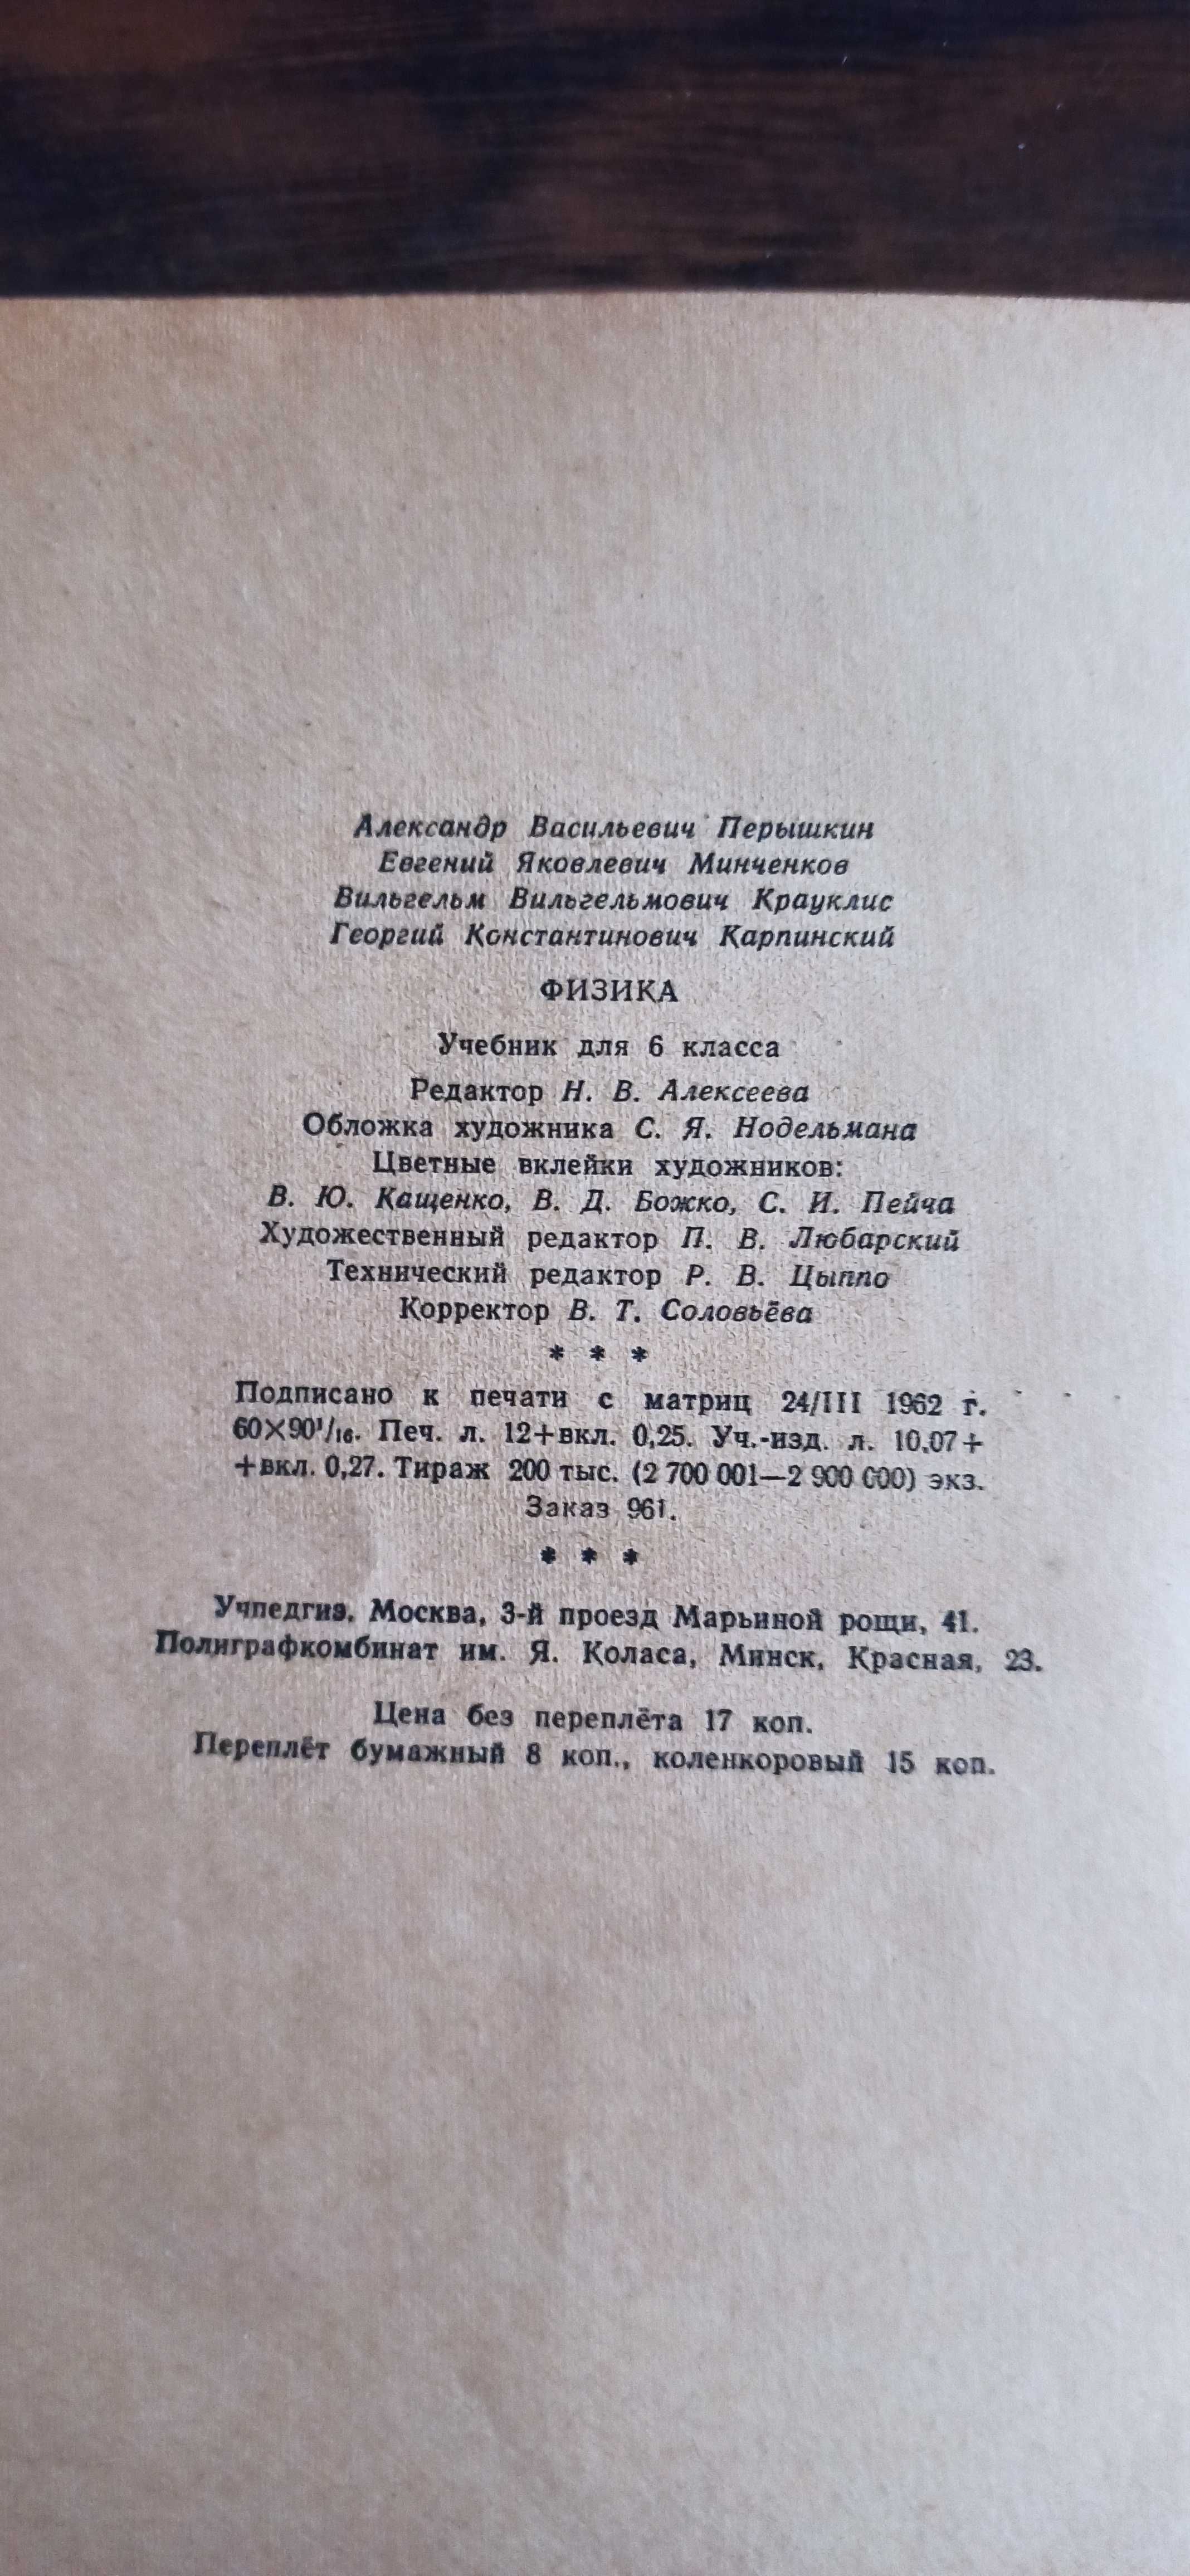 Учебник Физика 6-го класса, 1962 года